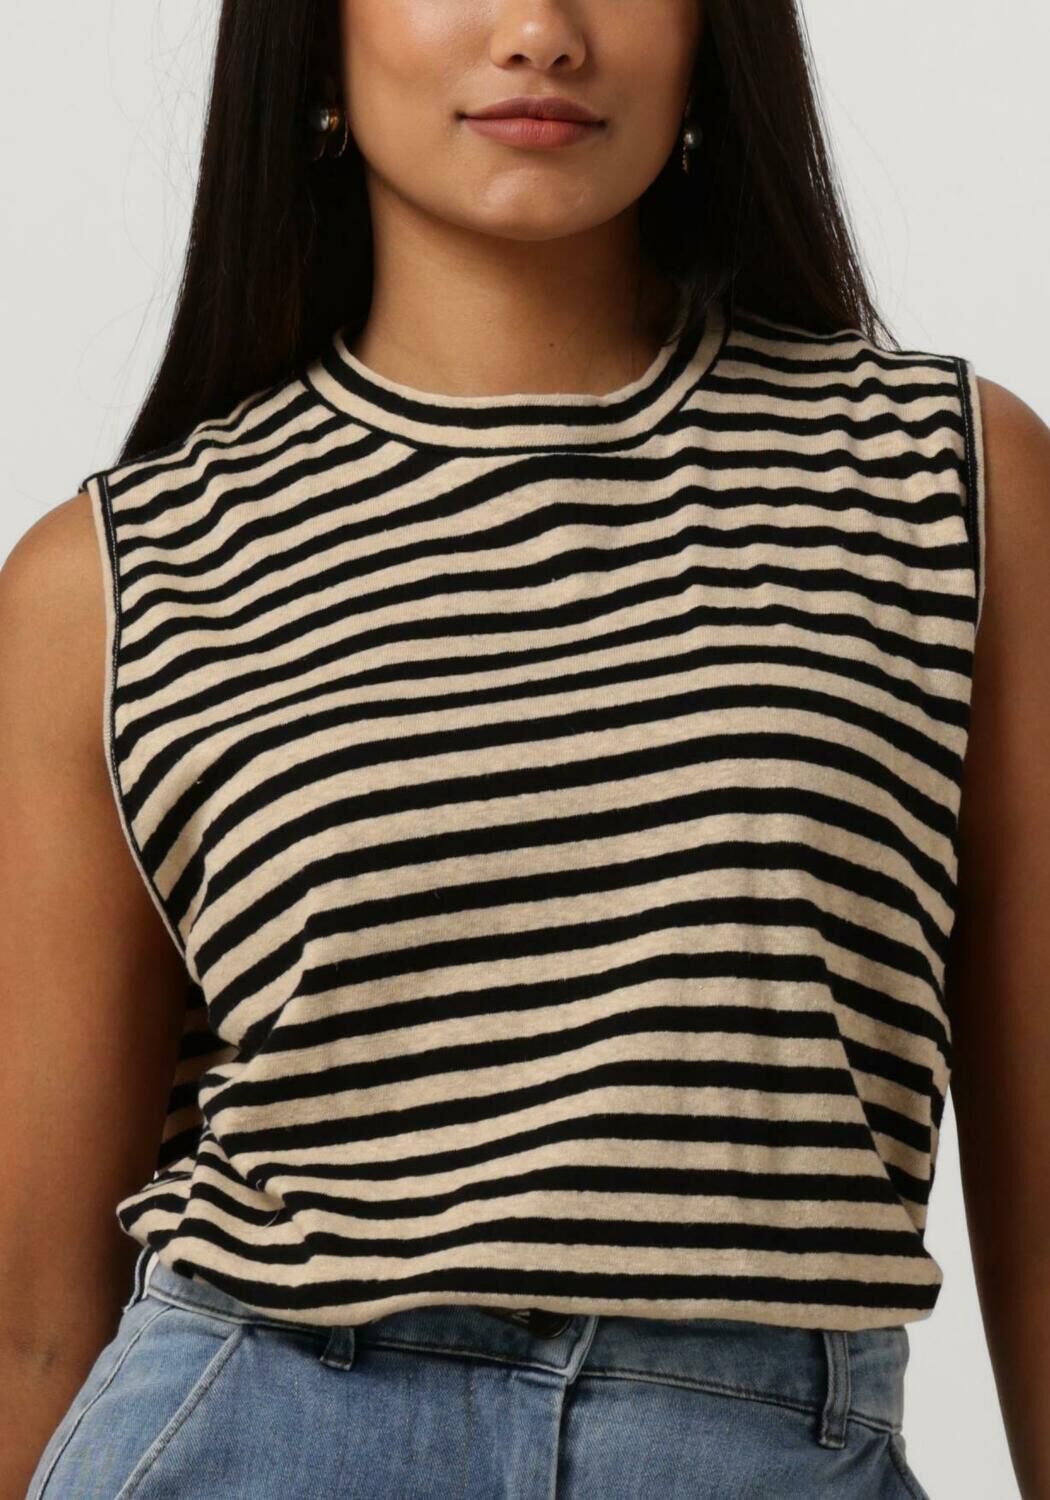 PENN & INK Dames Tops & T-shirts T-shirt Stripe Zwart